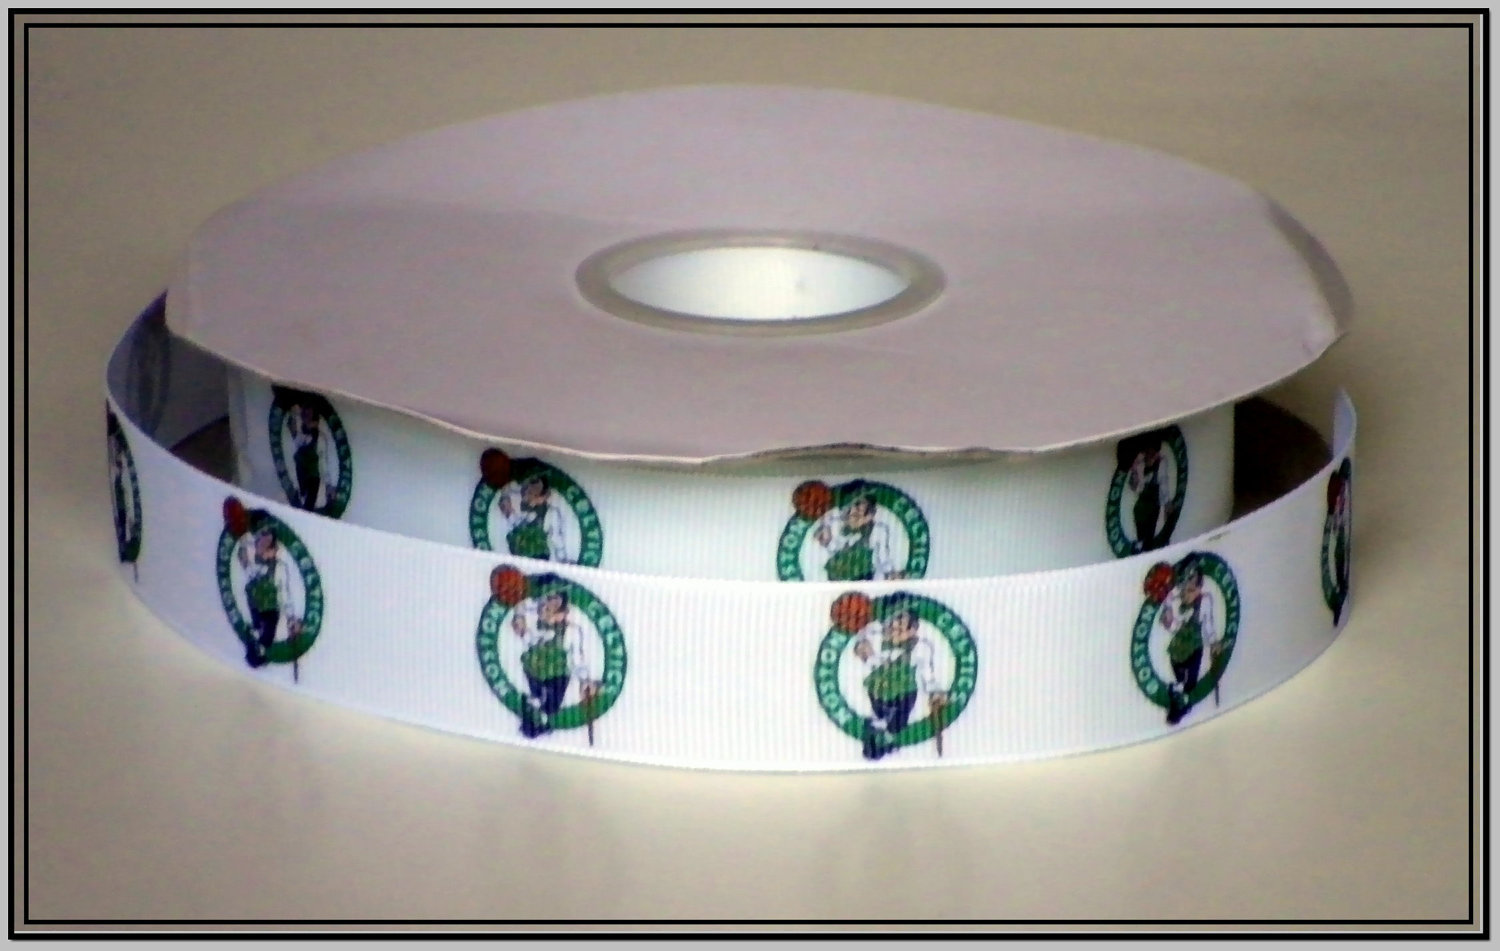 Boston Celtics Inspired Grosgrain Ribbon